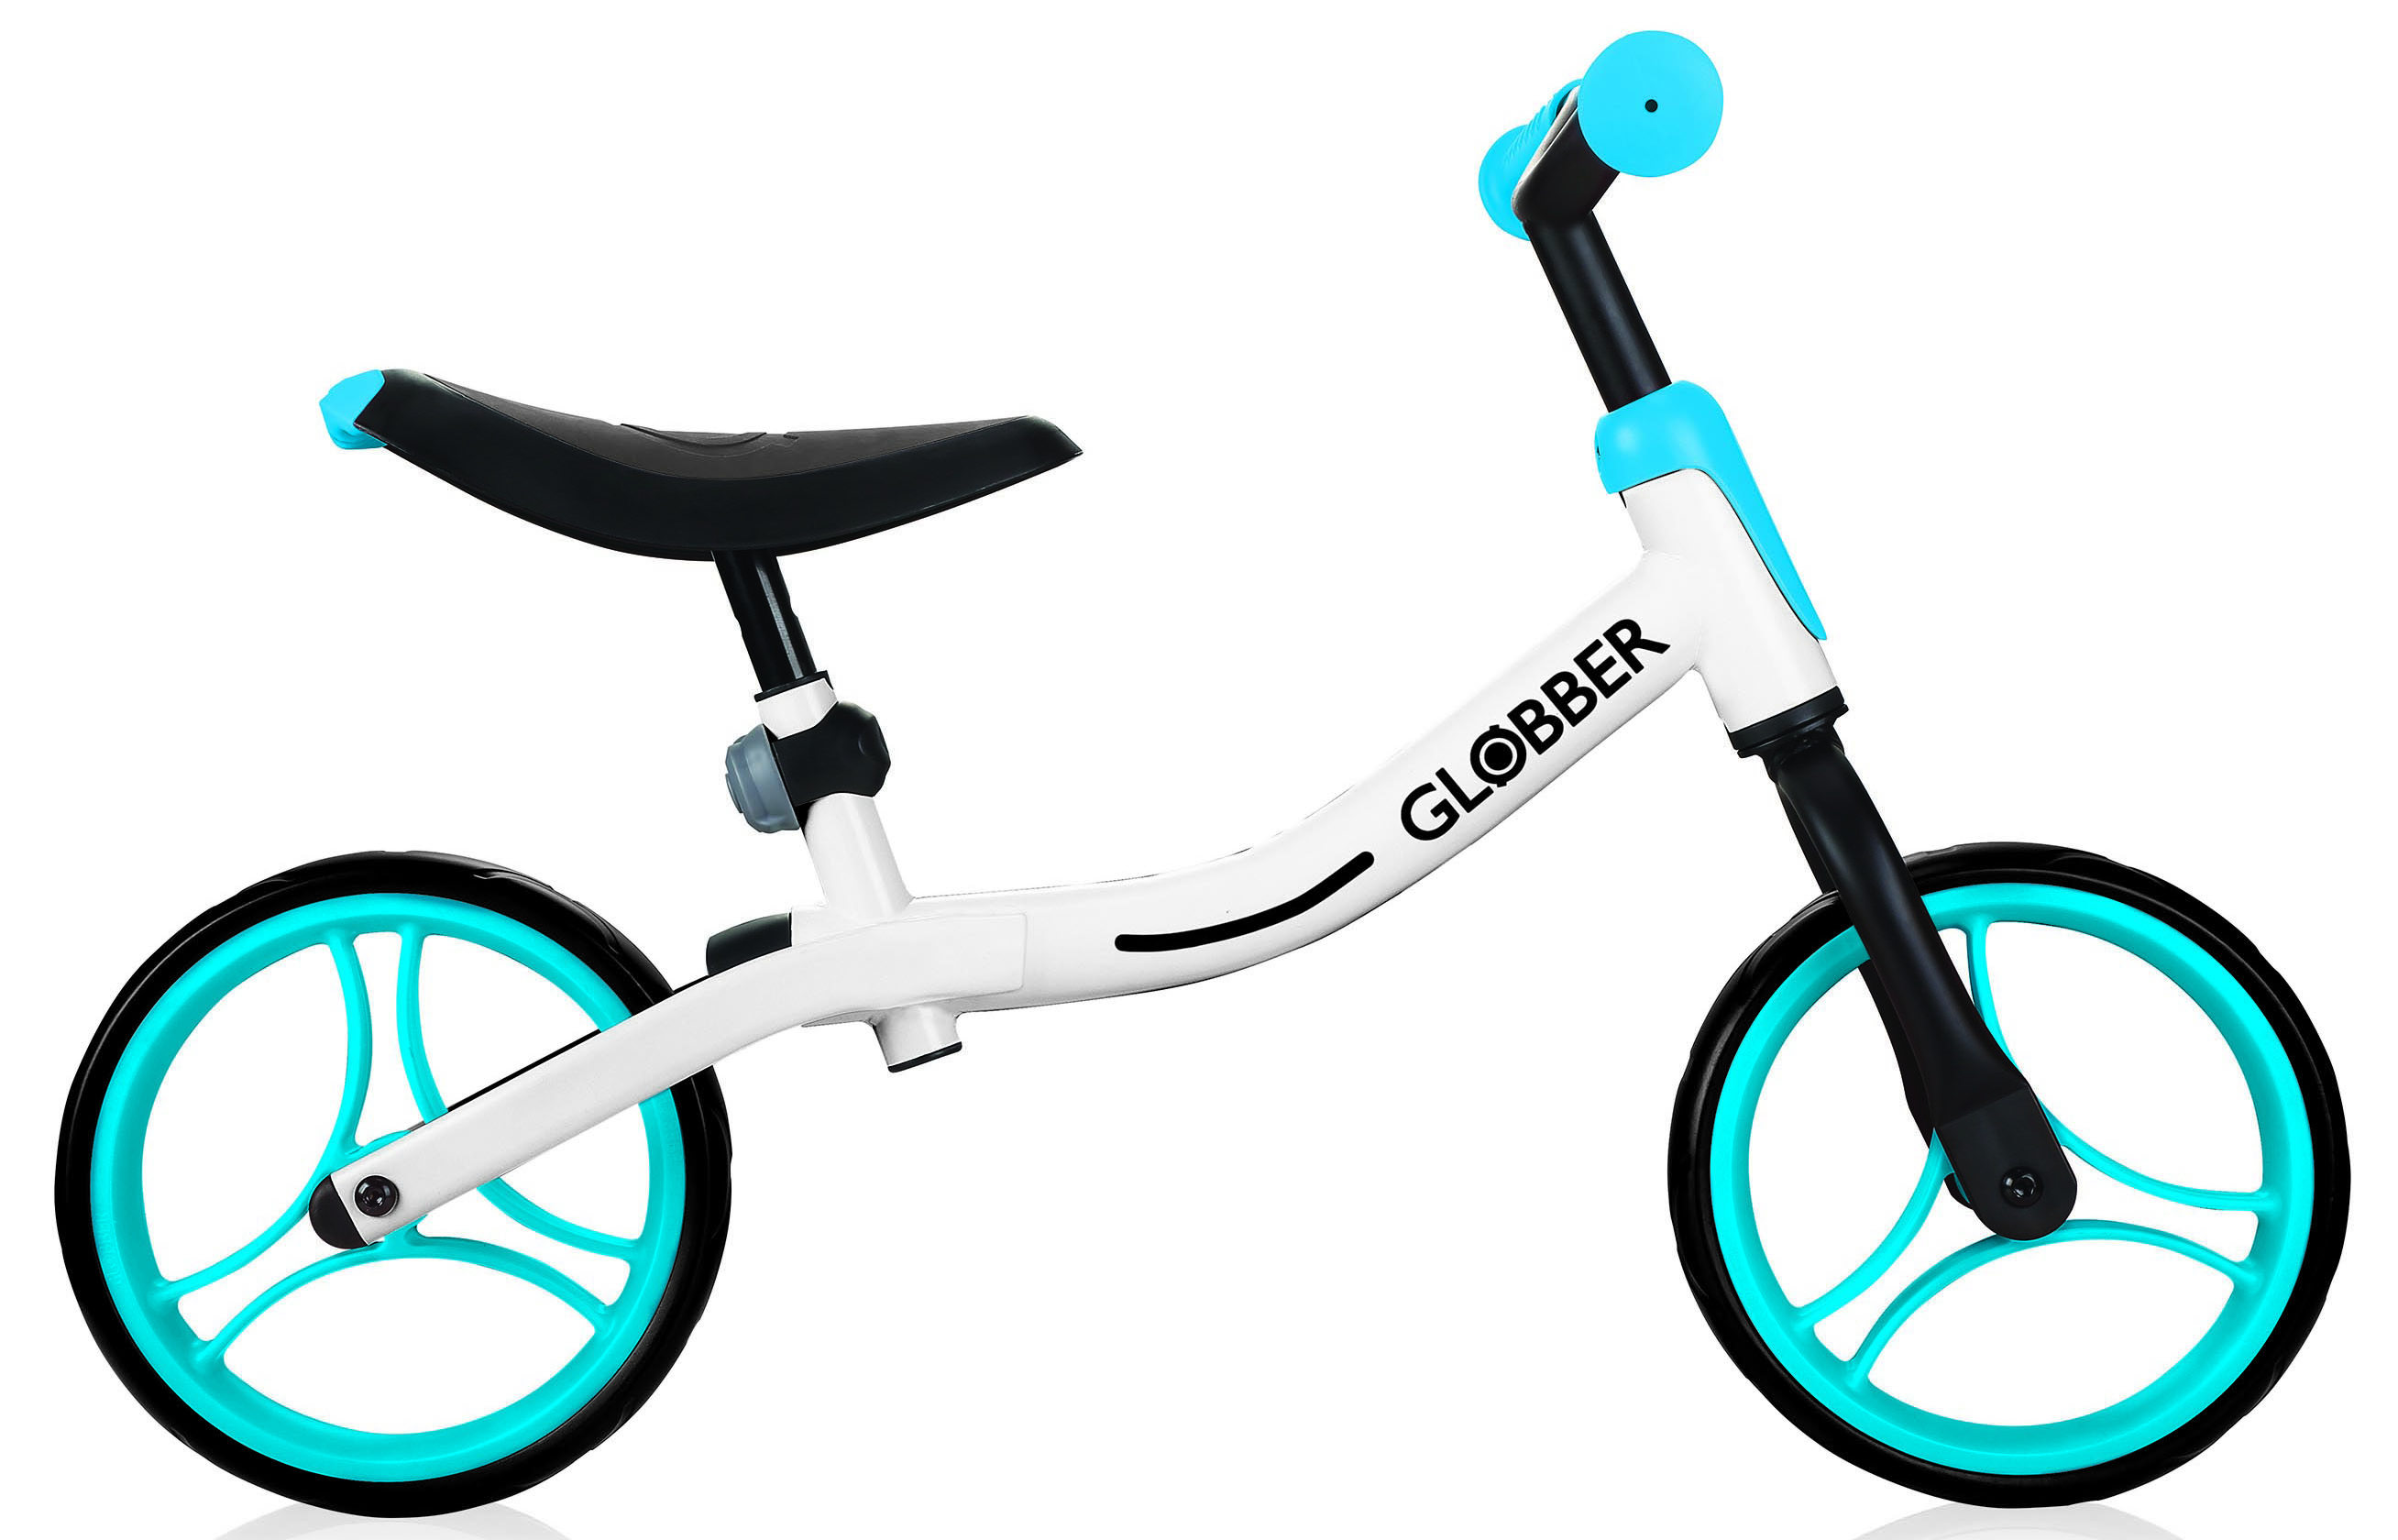  Отзывы о Детском велосипеде Globber Go Bike 2019